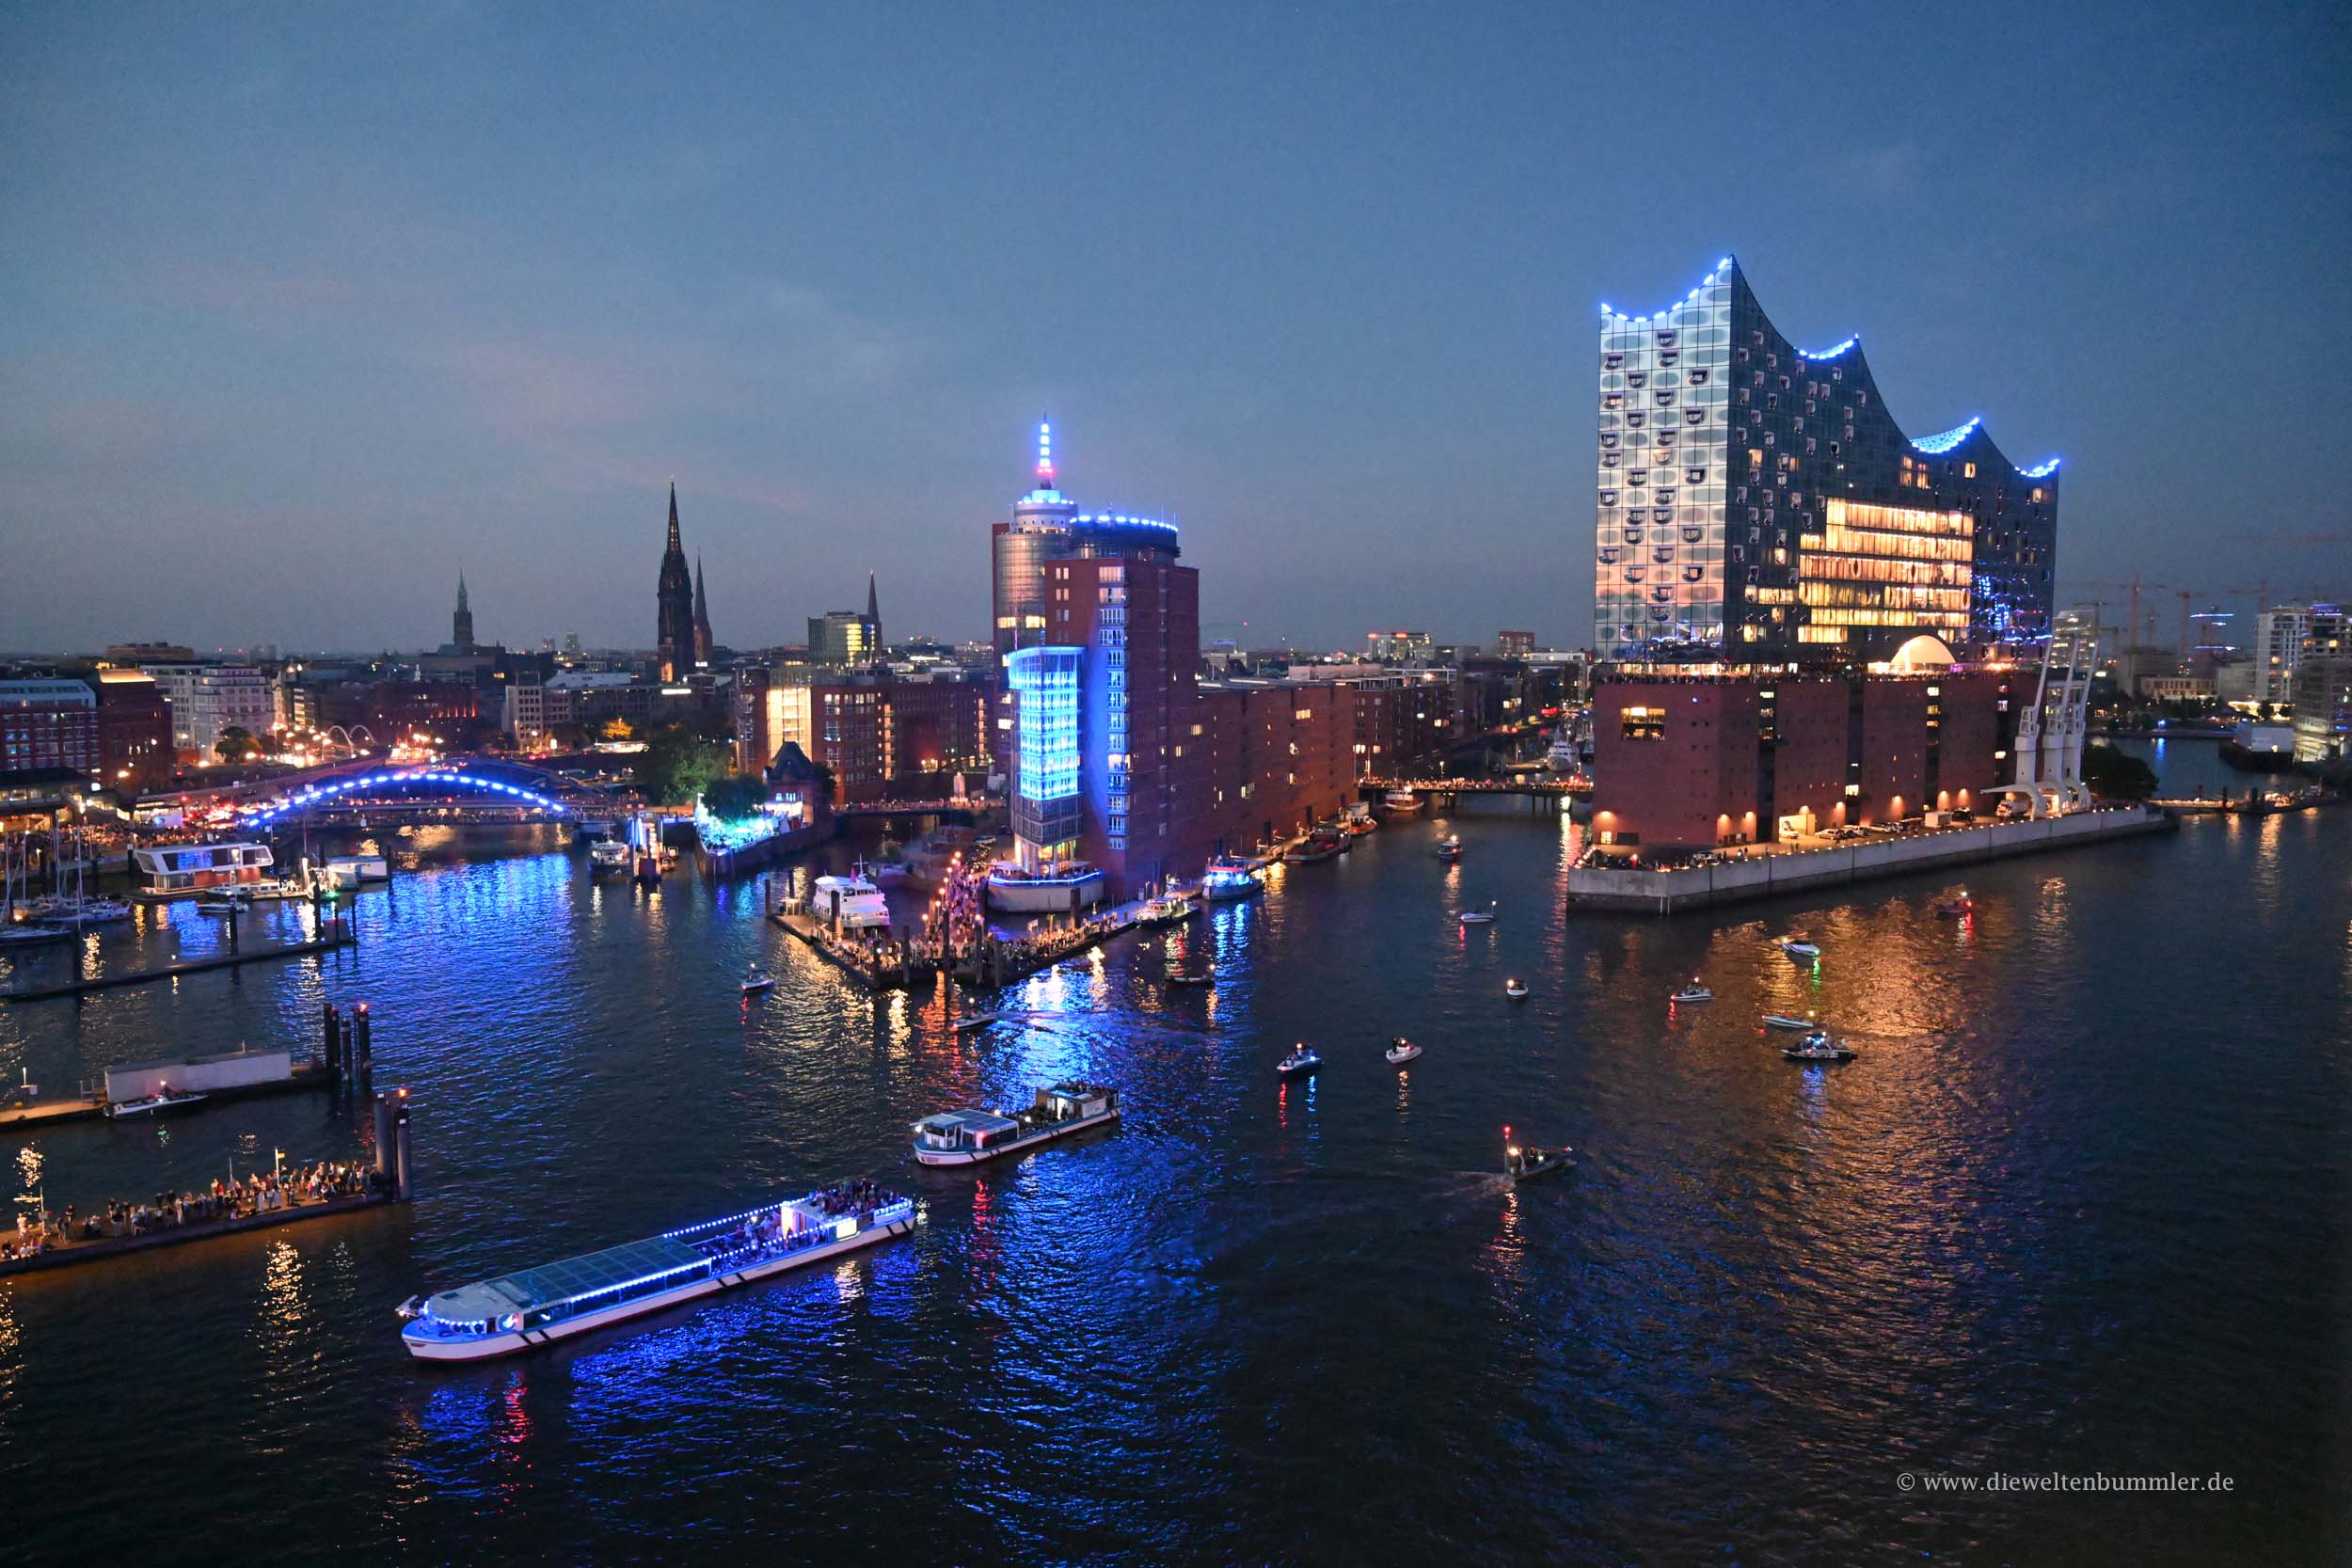 Blau beleuchteter Hafen in Hamburg